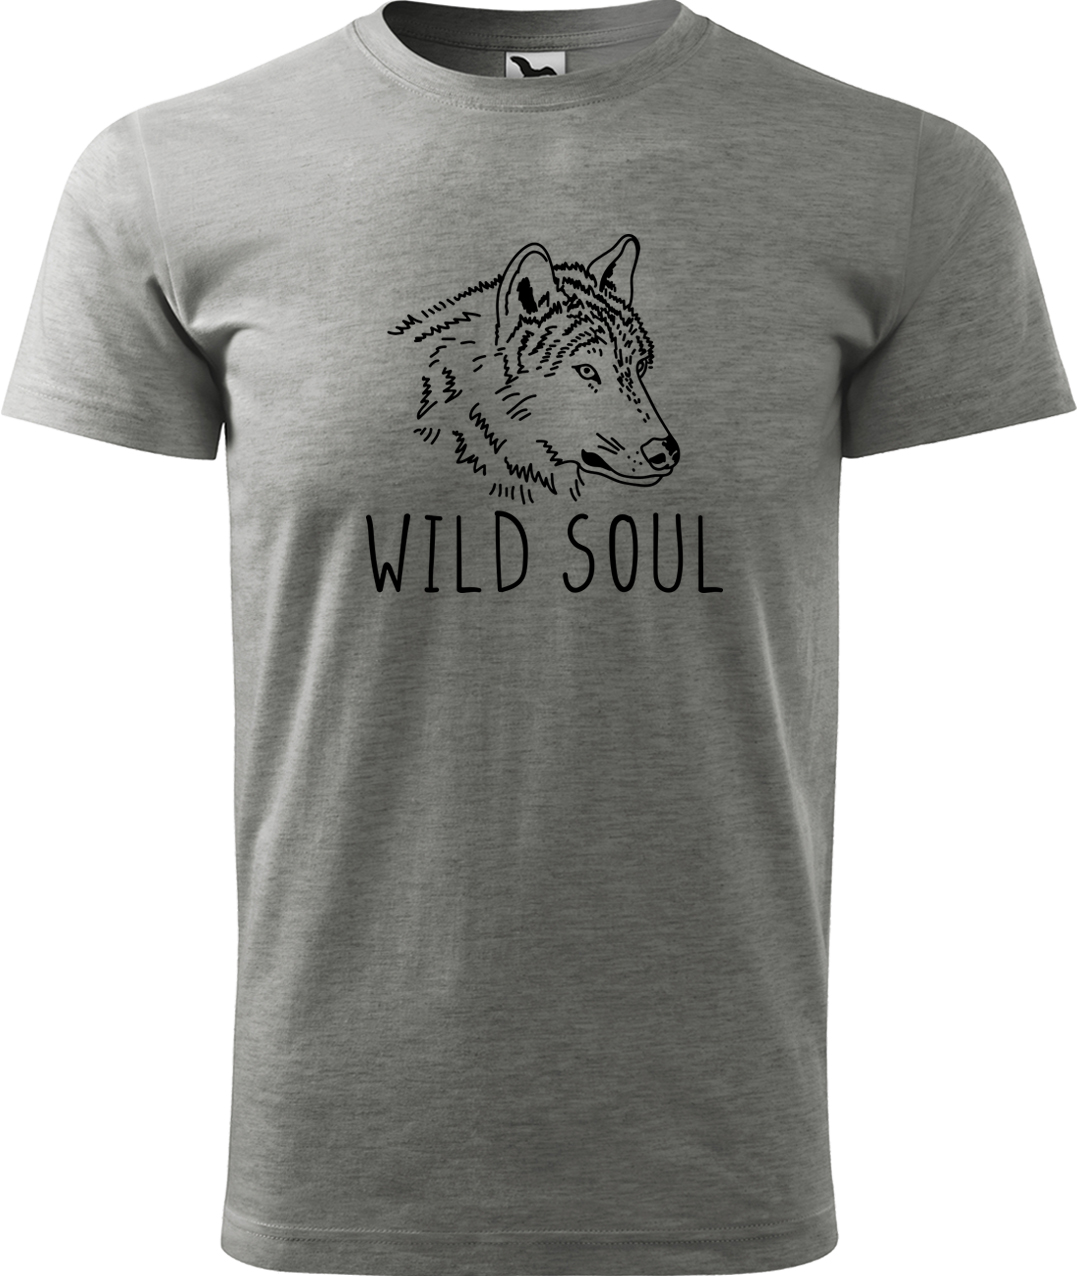 Pánské tričko s vlkem - Wild soul Velikost: M, Barva: Tmavě šedý melír (12), Střih: pánský